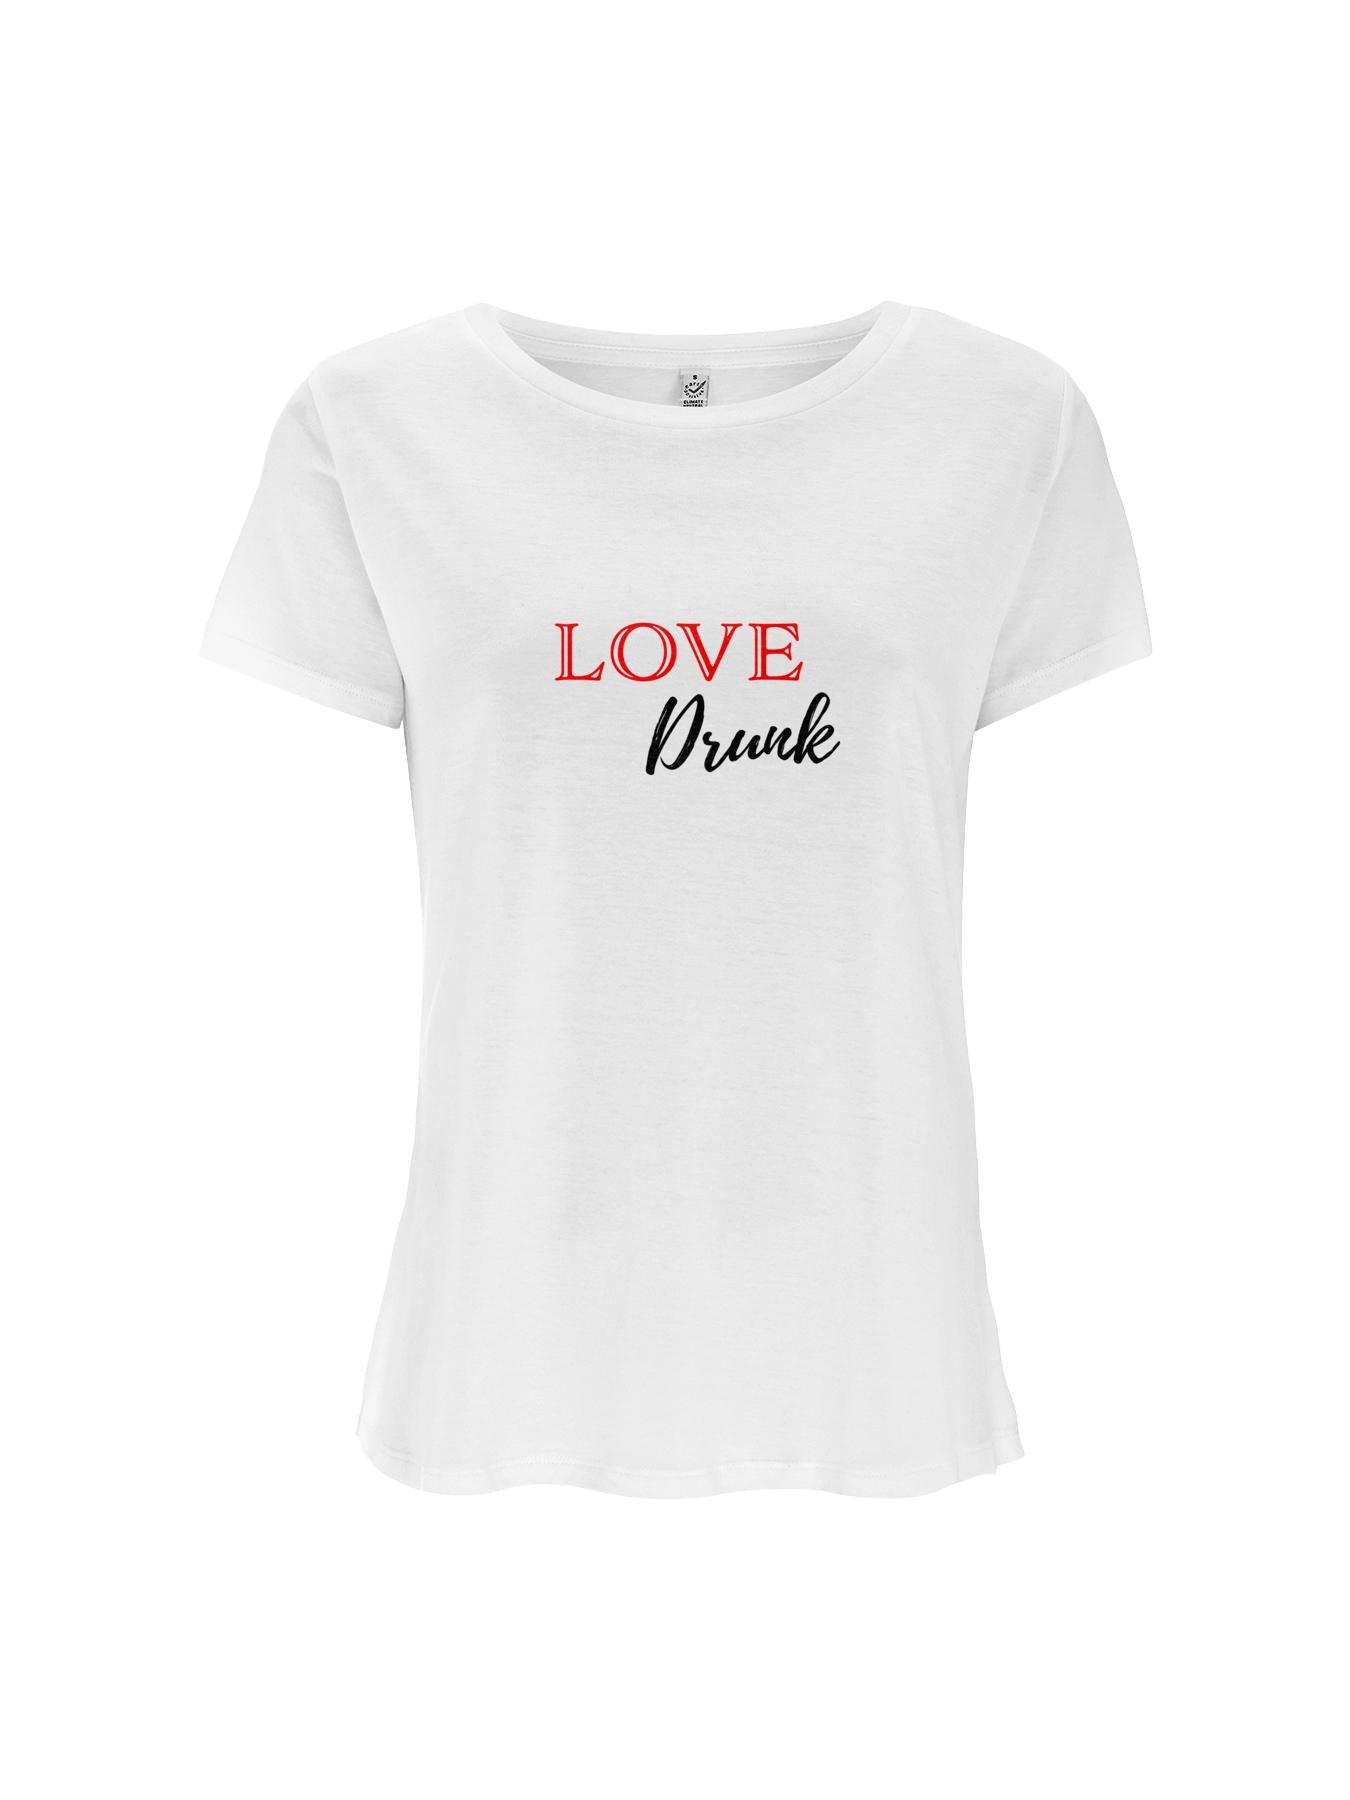 LOVE DRUNK T shirt